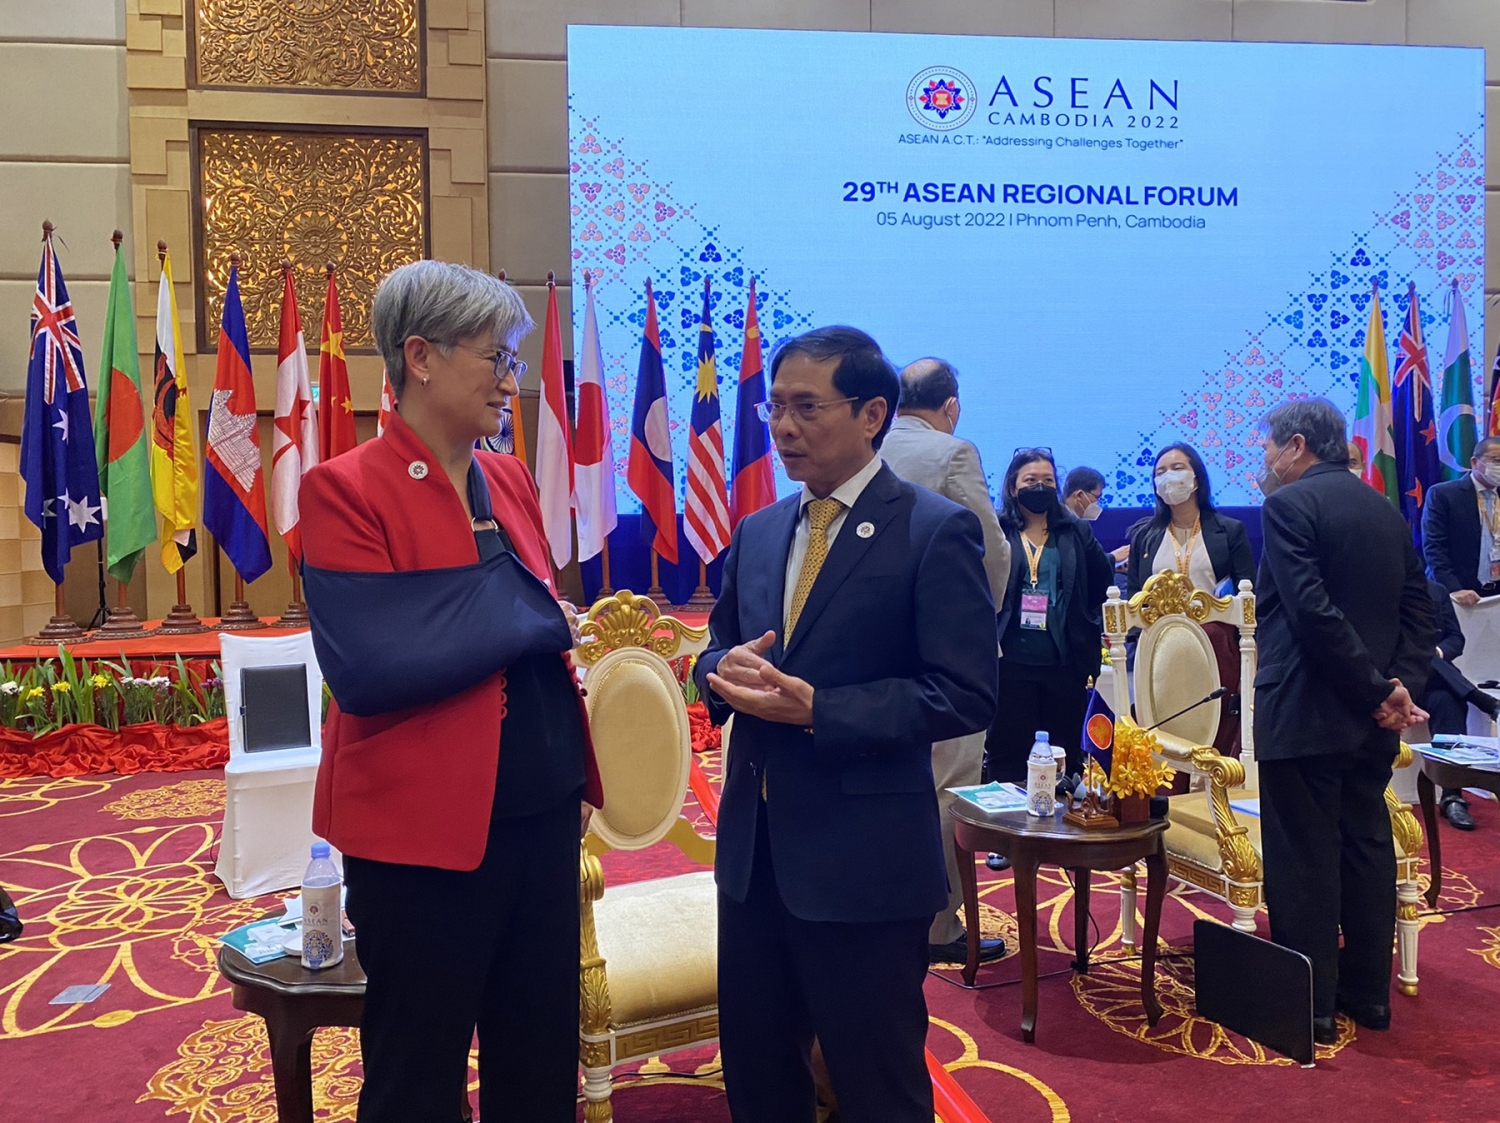 Diễn đàn Khu vực ASEAN lần thứ 29: Đối thoại thực chất, trao đổi sâu rộng về các vấn đề khu vực và quốc tế